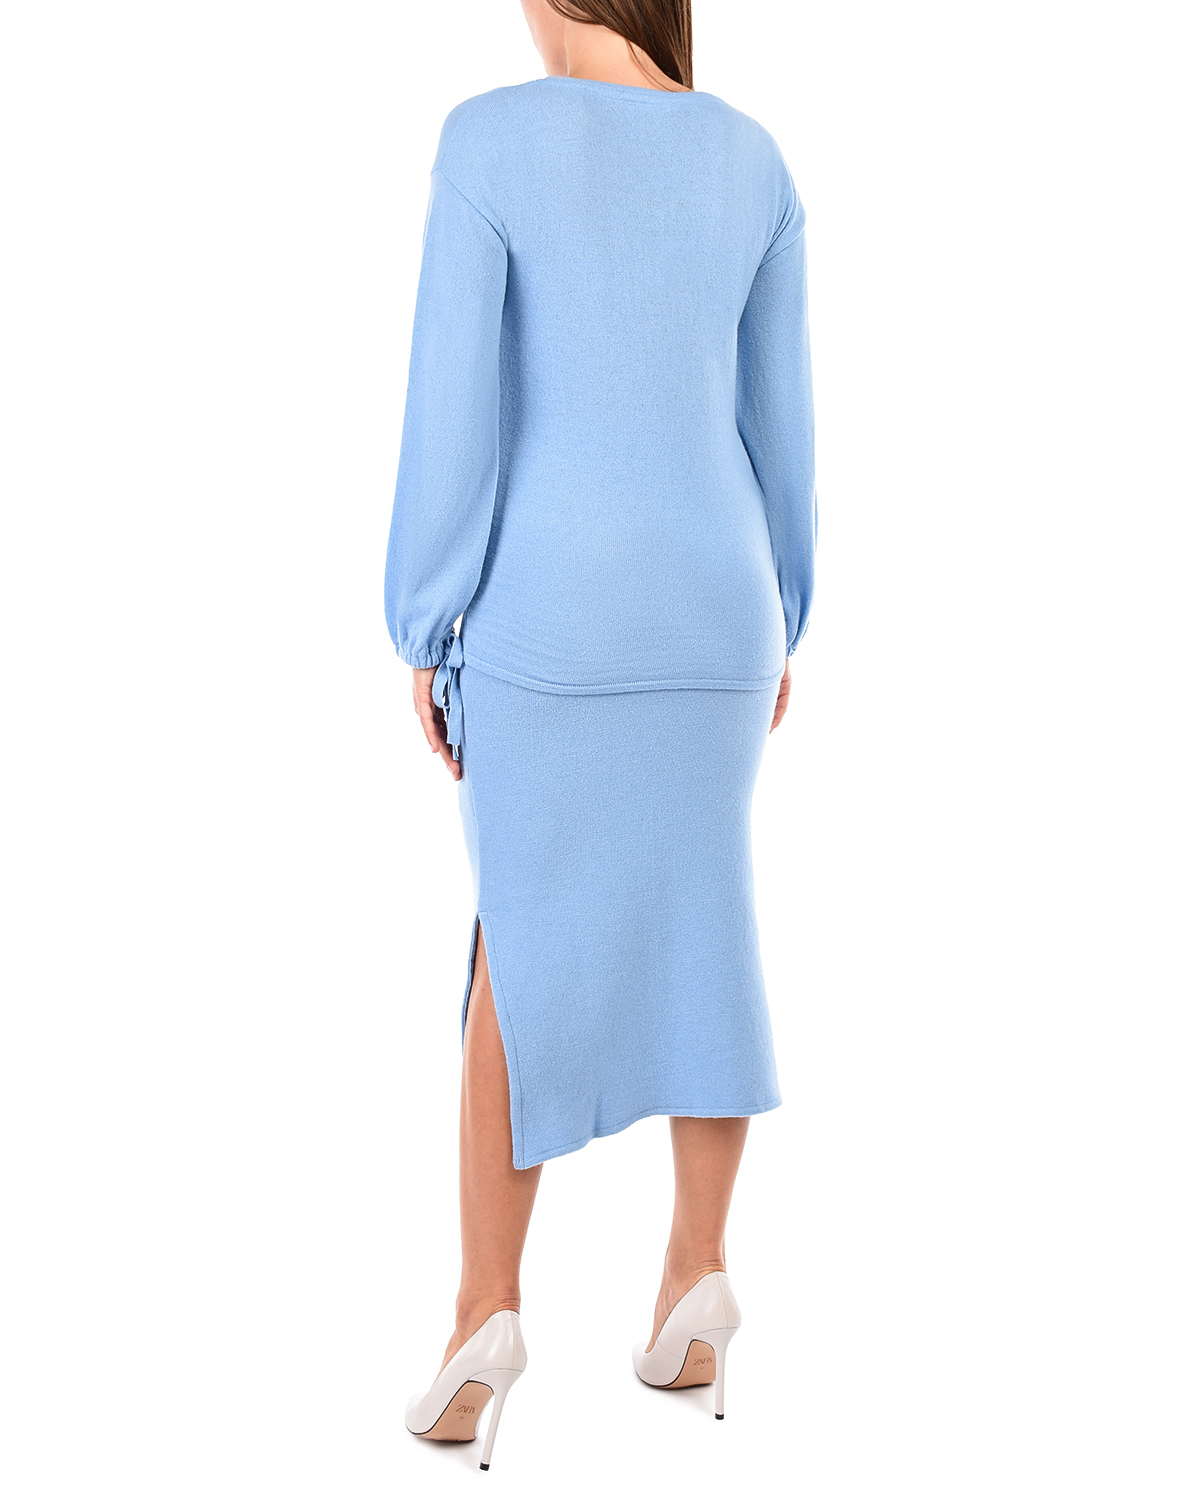 Голубая юбка-миди для беременных Gardena Pietro Brunelli, размер 42, цвет голубой - фото 3